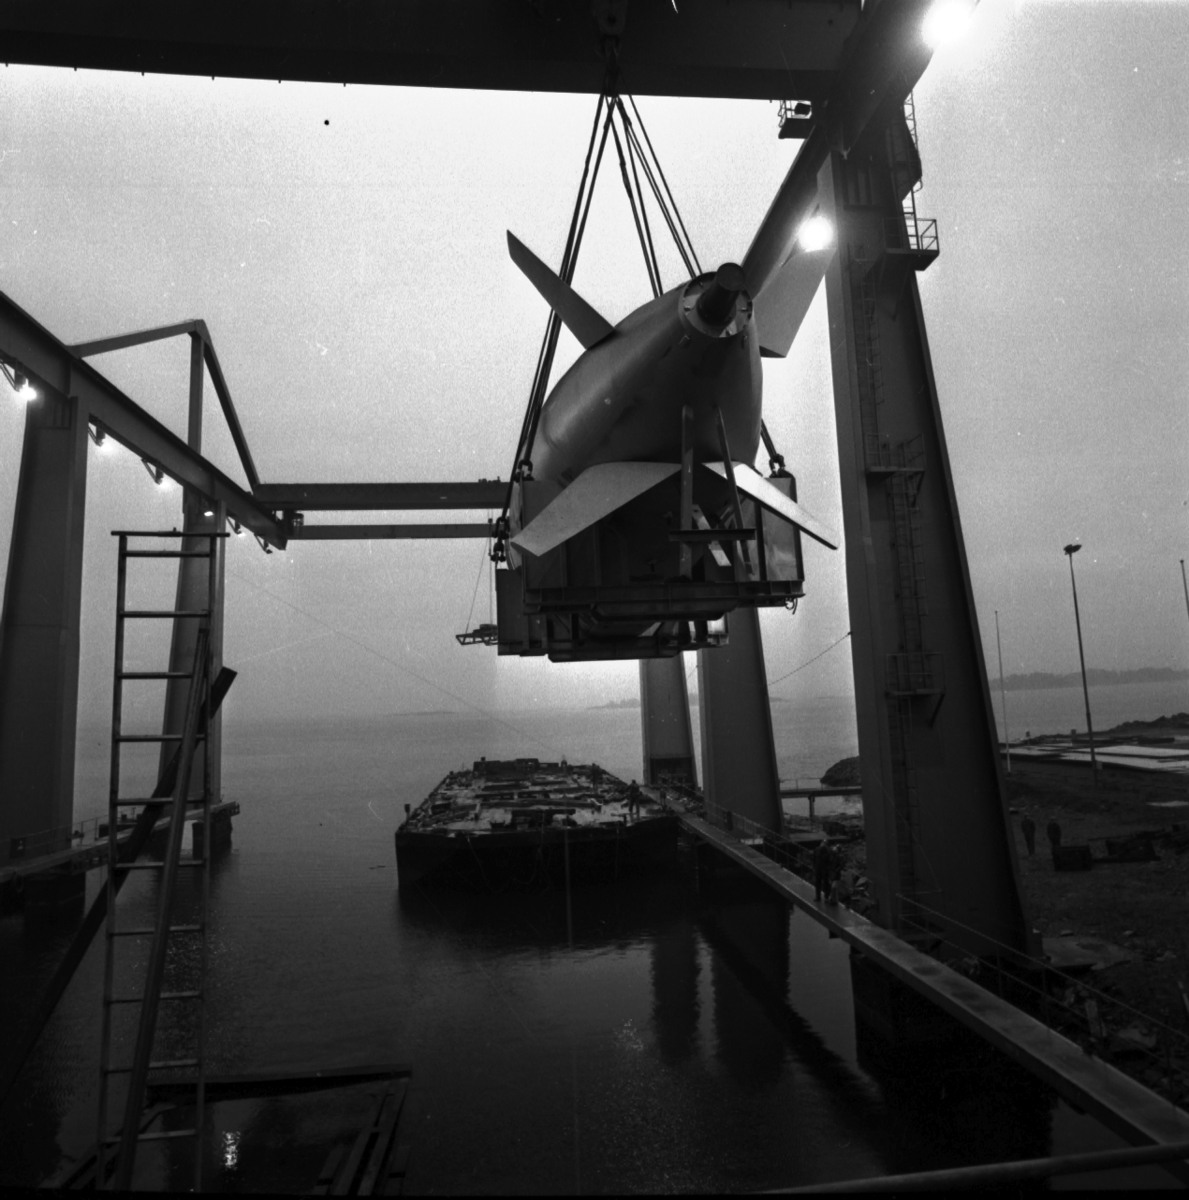 Varvet runt- en bildutställning
Aktersektionen till den första av de tre Näcken-ubåtarna lastades på pråm i december 1977 för transport till Kockums i Malmö. För- och aktersektionerna till ubåtarna tillverkades i Karlskrona och mittsektionerna i Malmö där sektionerna sammanfogades och fartygen byggdes färdiga.